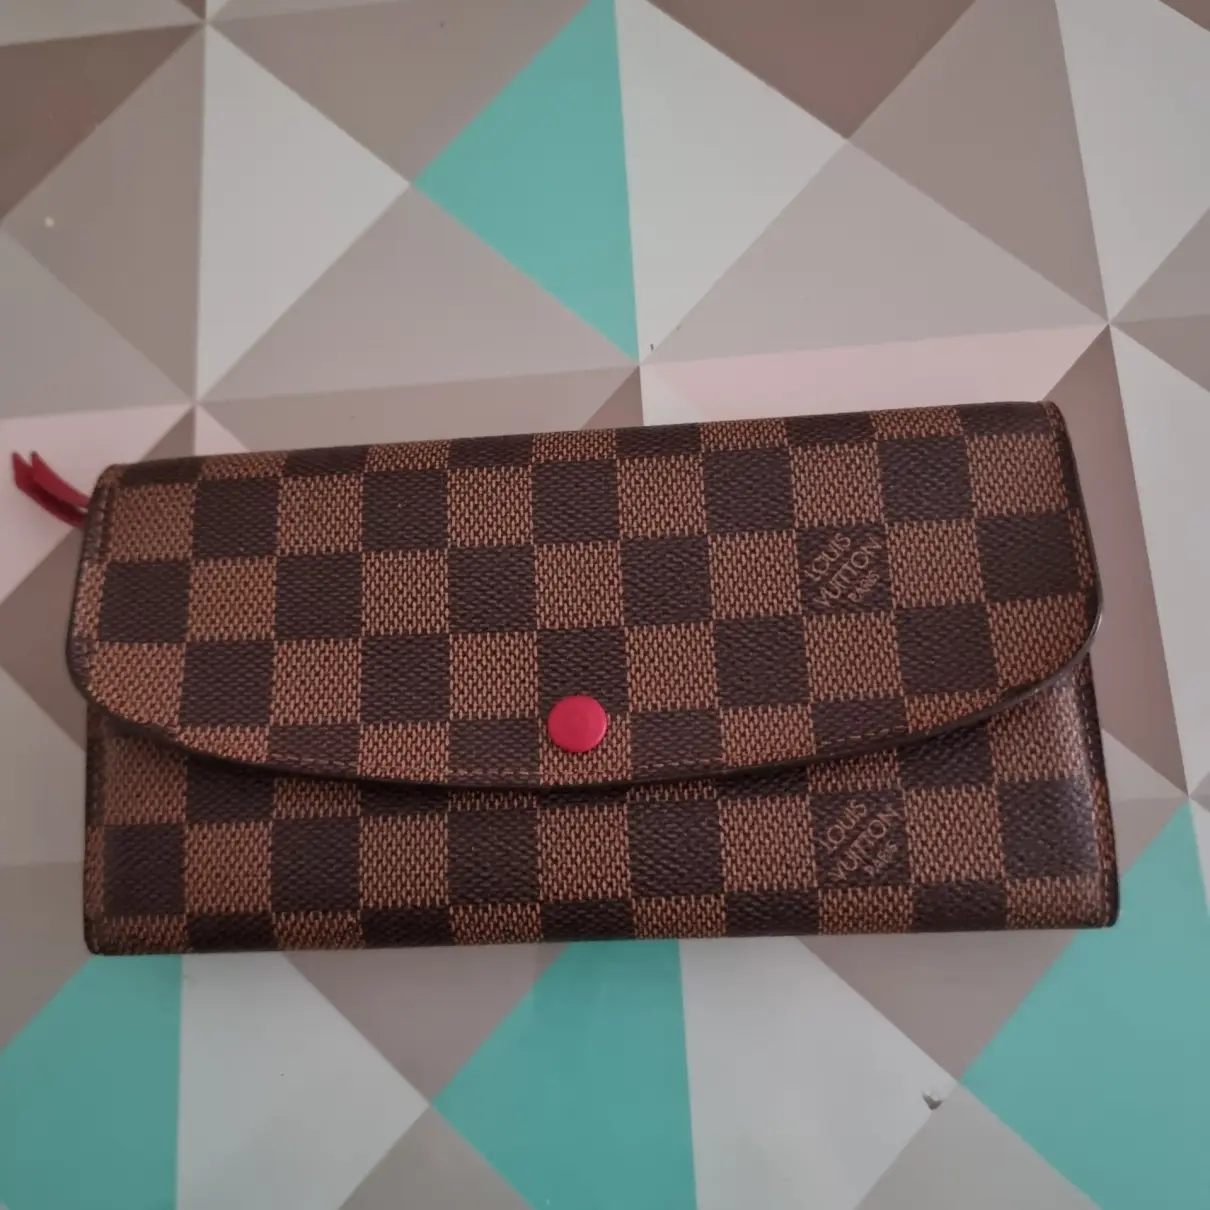 Buy Louis Vuitton Emilie leather wallet online